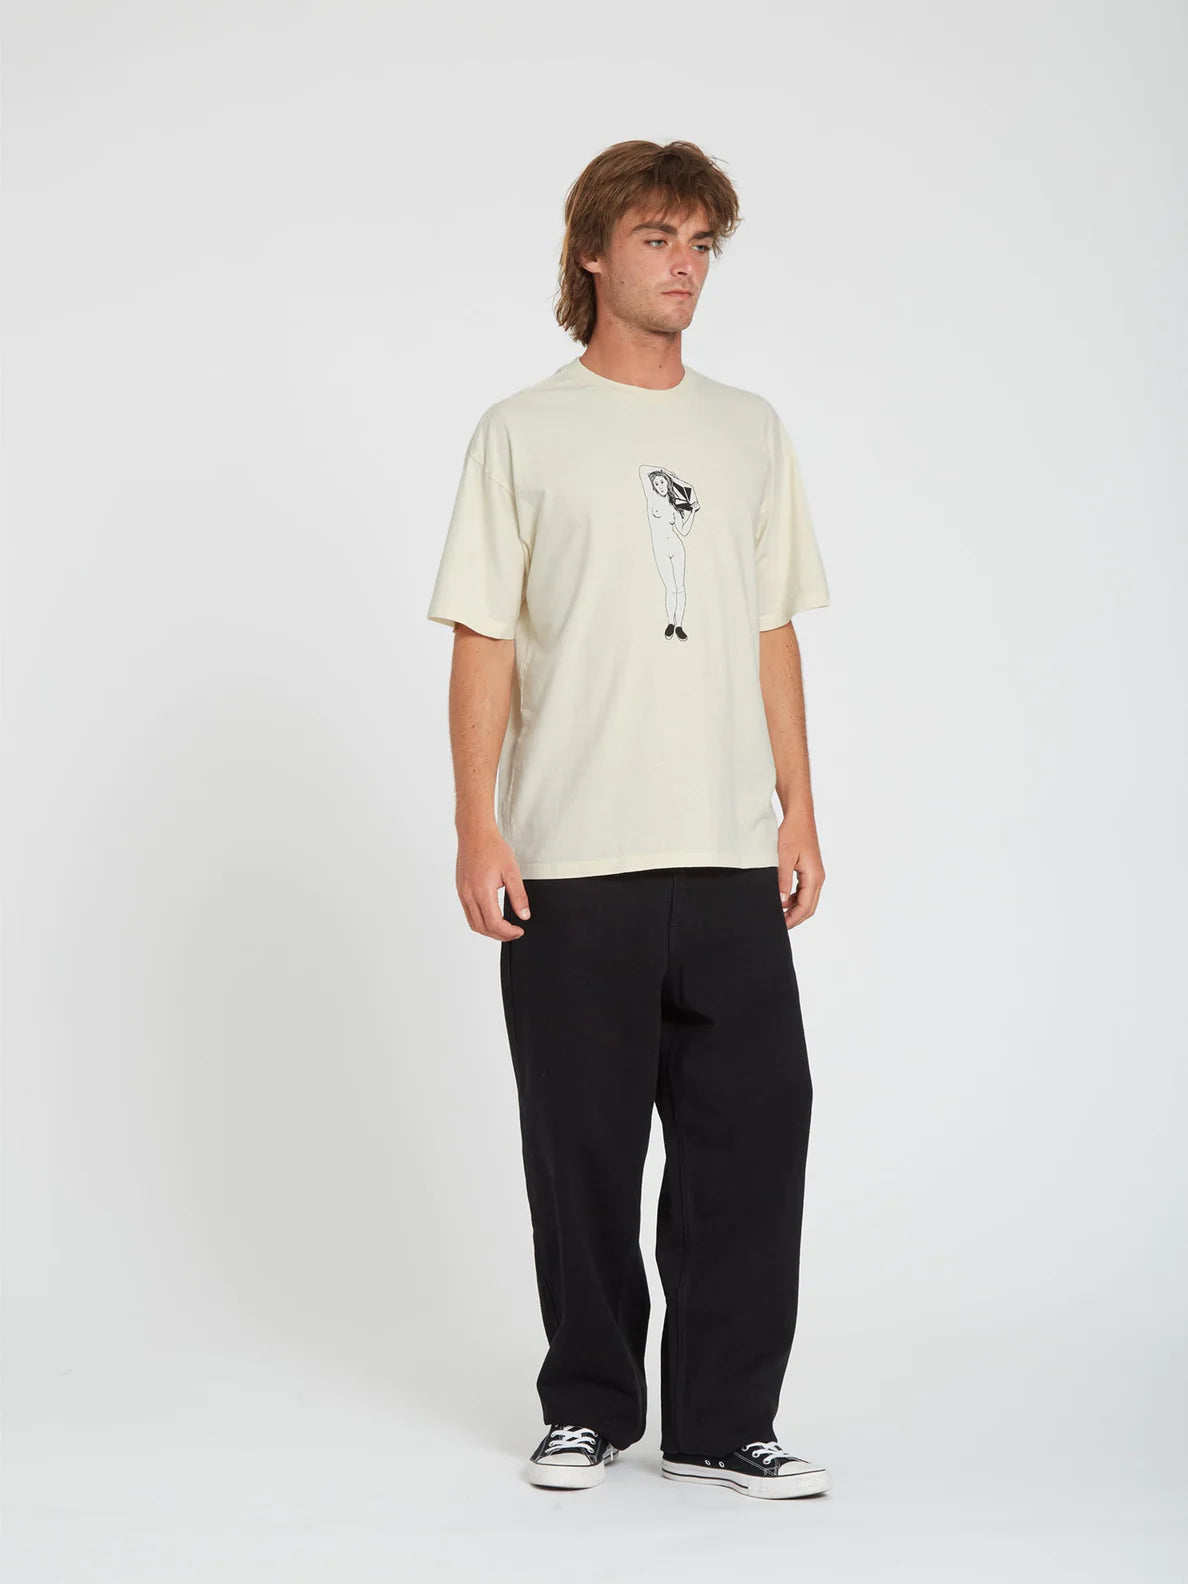 Camiseta Volcom Binik SST Whitecap Grey | Camisetas de hombre | Camisetas manga corta de hombre | Volcom Shop | surfdevils.com